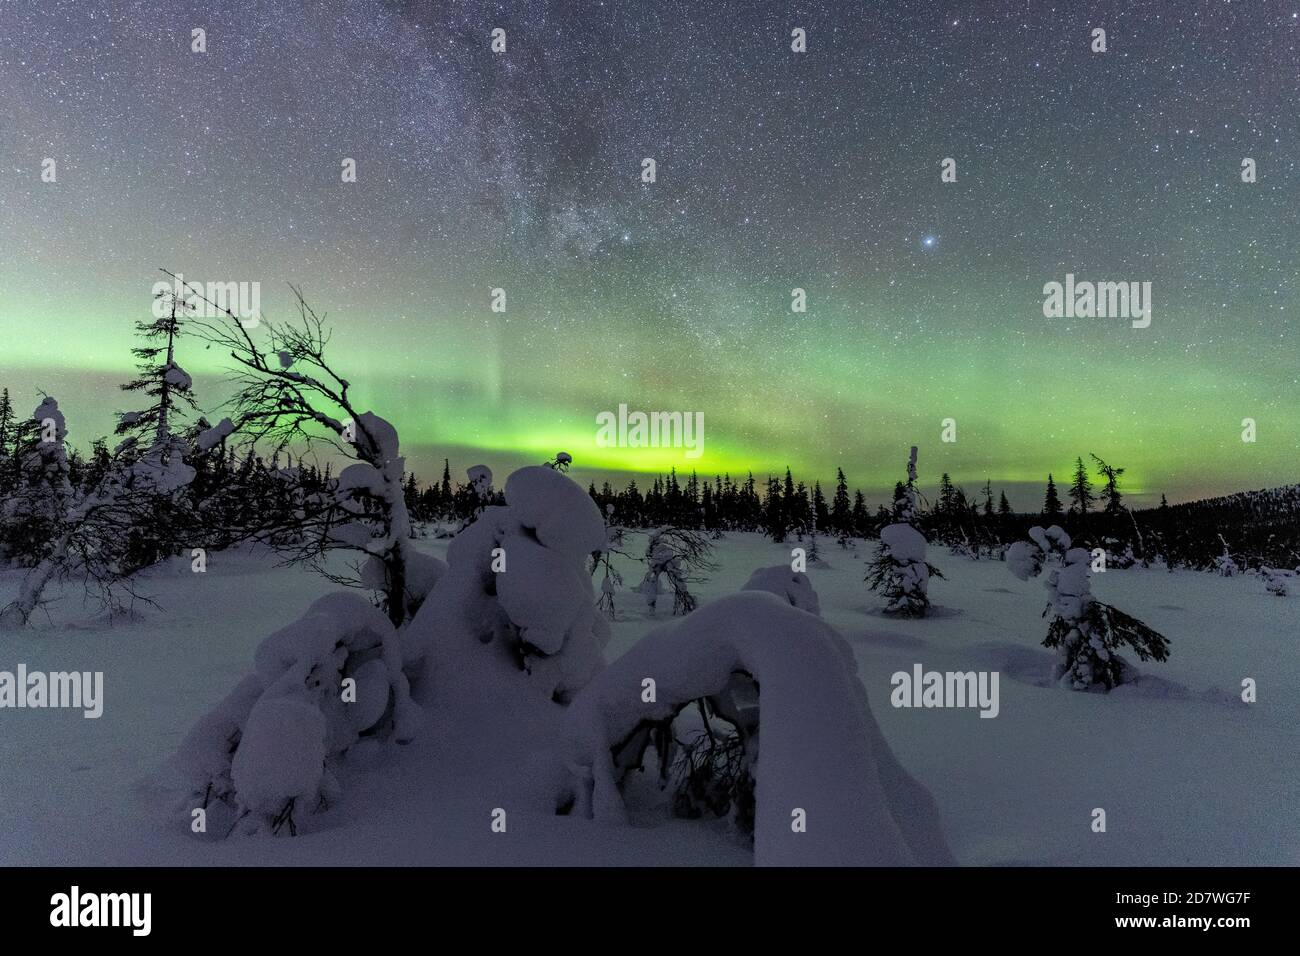 Alberi congelati nella foresta innevata illuminata dall'Aurora Borealis, dal Parco Nazionale Pallas-Yllastunturi, Muonio, Lapponia, Finlandia Foto Stock